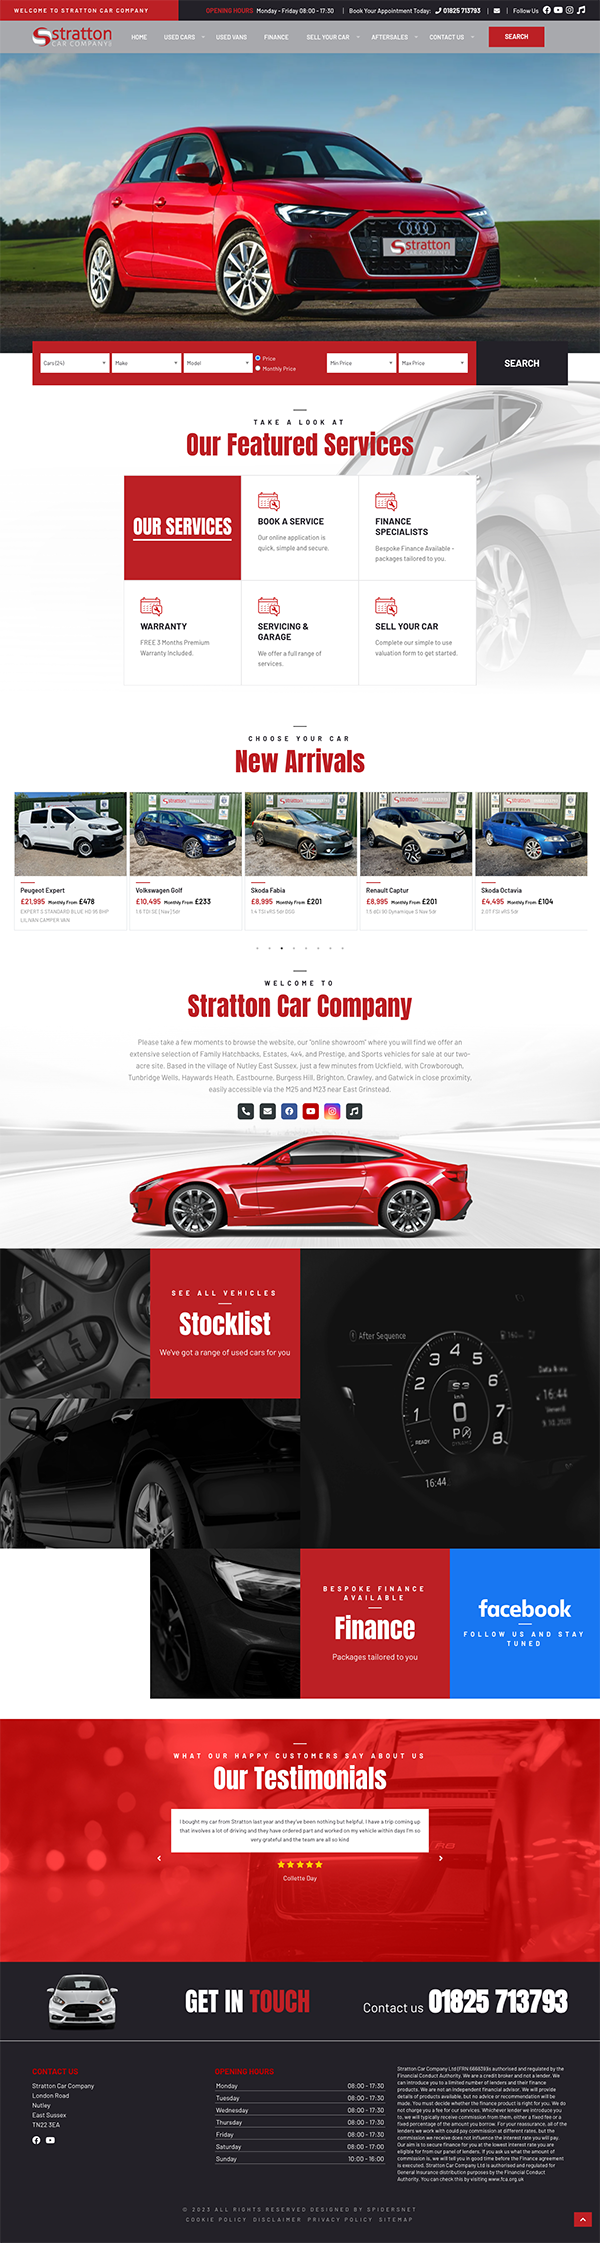 Stratton Car Company